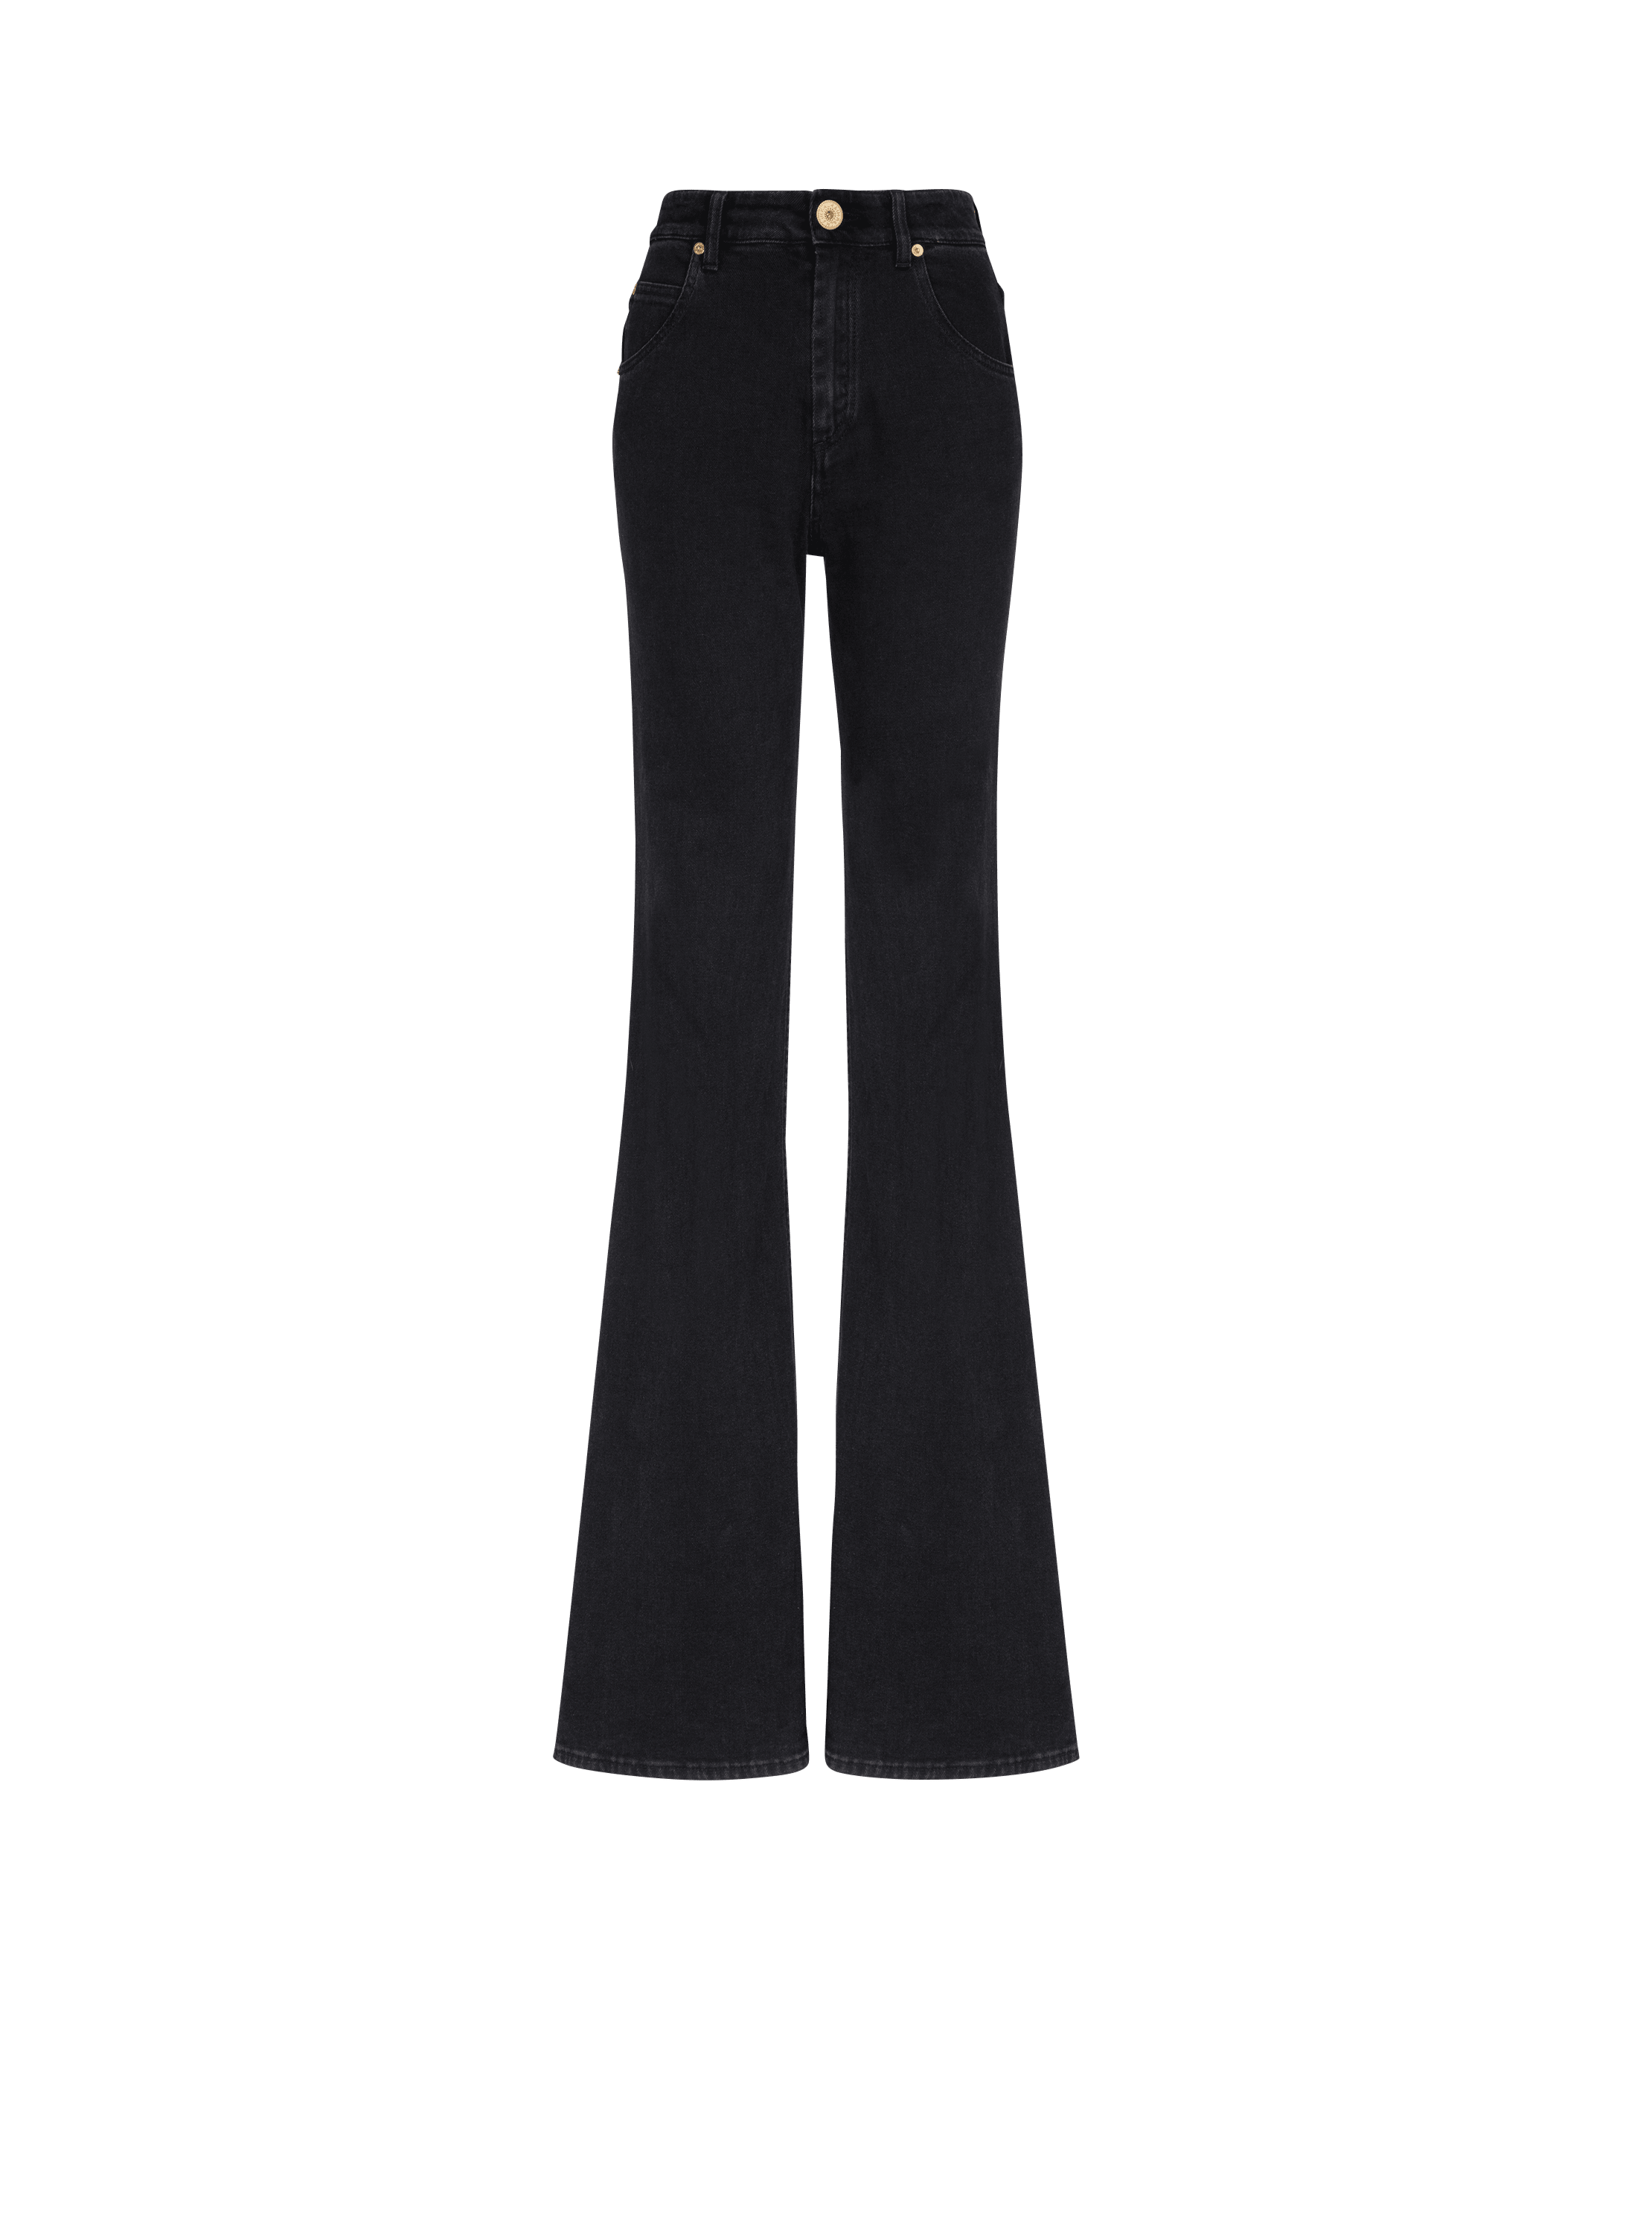 Flared denim jeans, black, hi-res